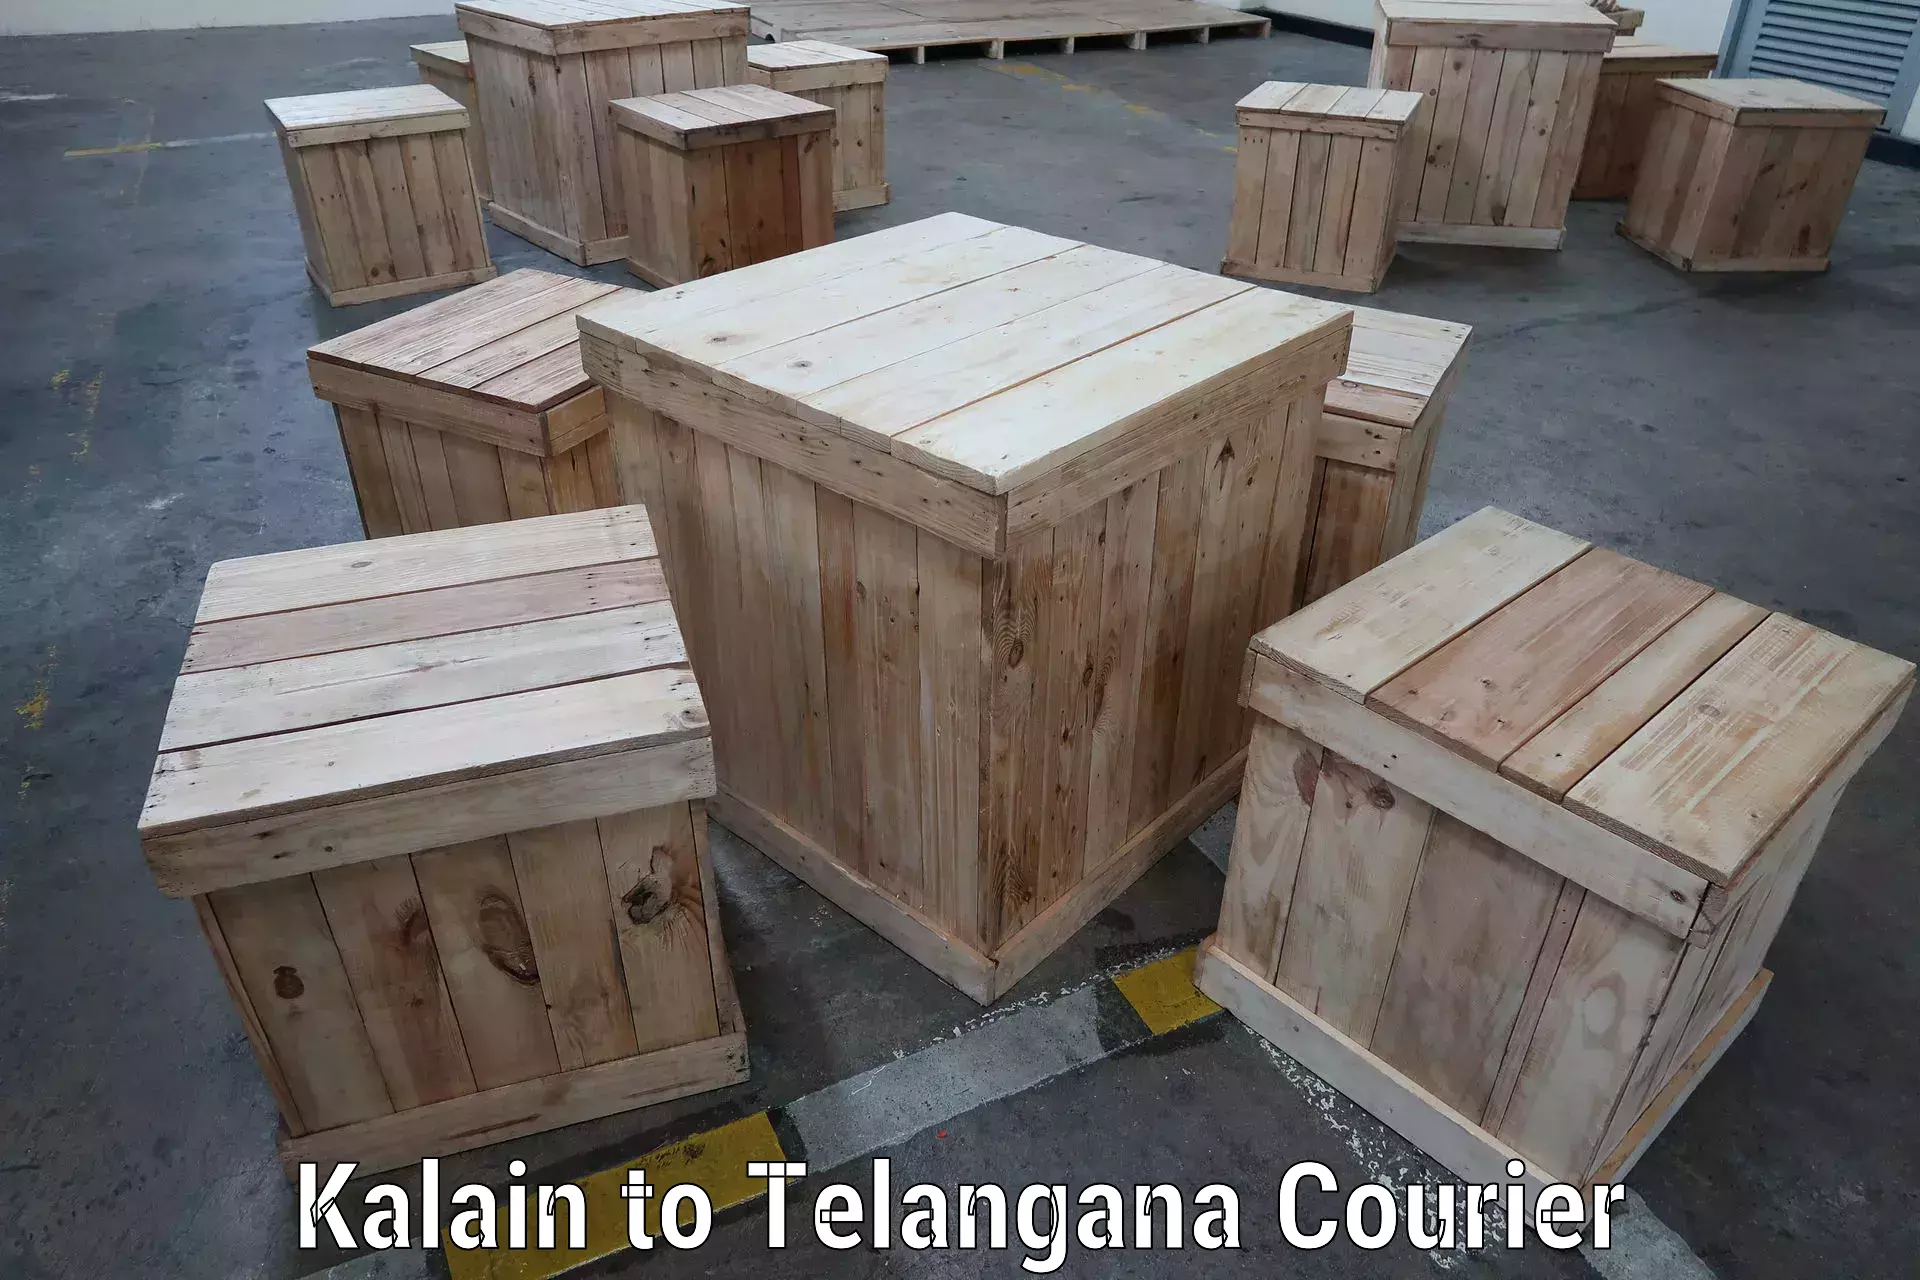 International courier rates Kalain to Telangana